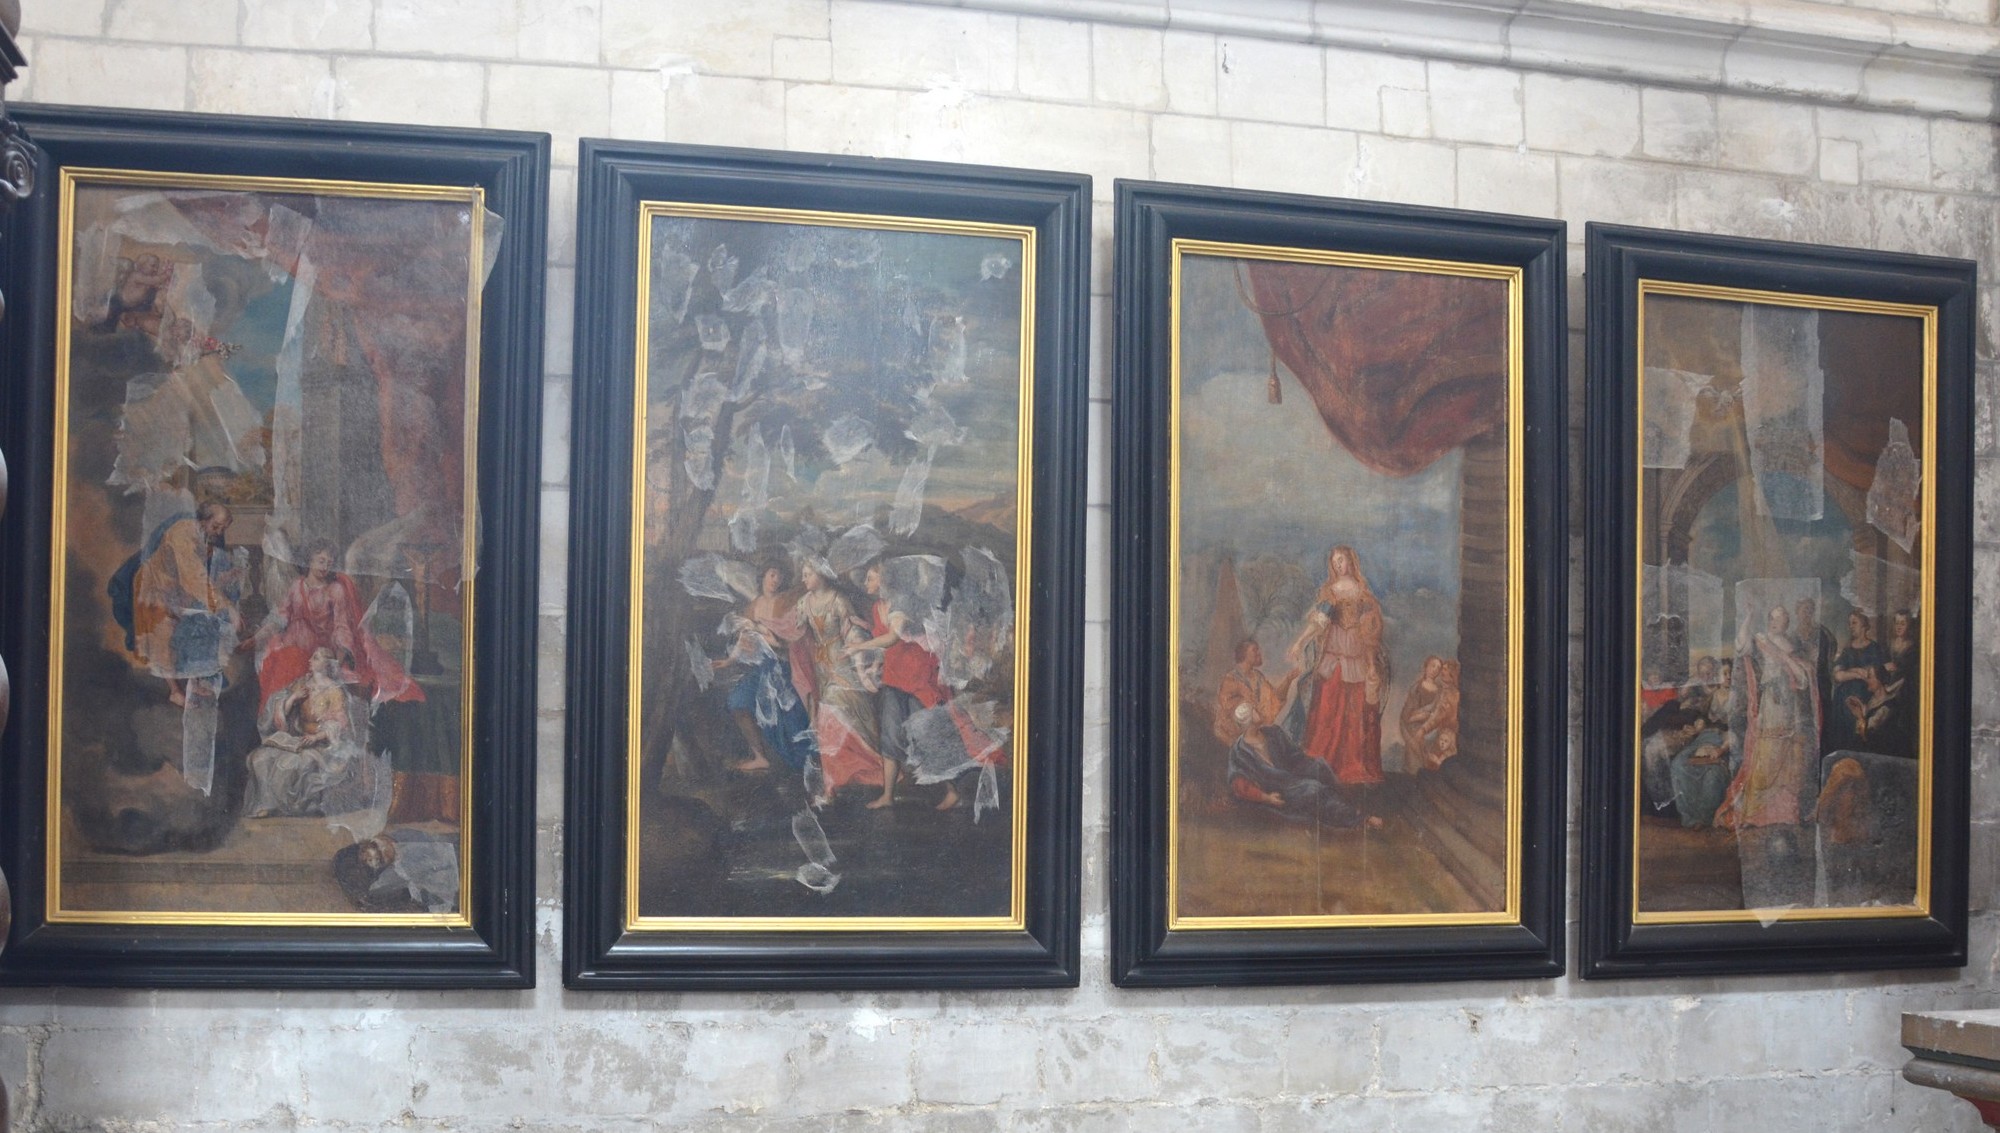 Cathédrale de Saint-Omer - Chapelle ancienne saint Blaise -  4 tableaux modernes relatant la vie de sainte Aldegonde : voir la description plus haut